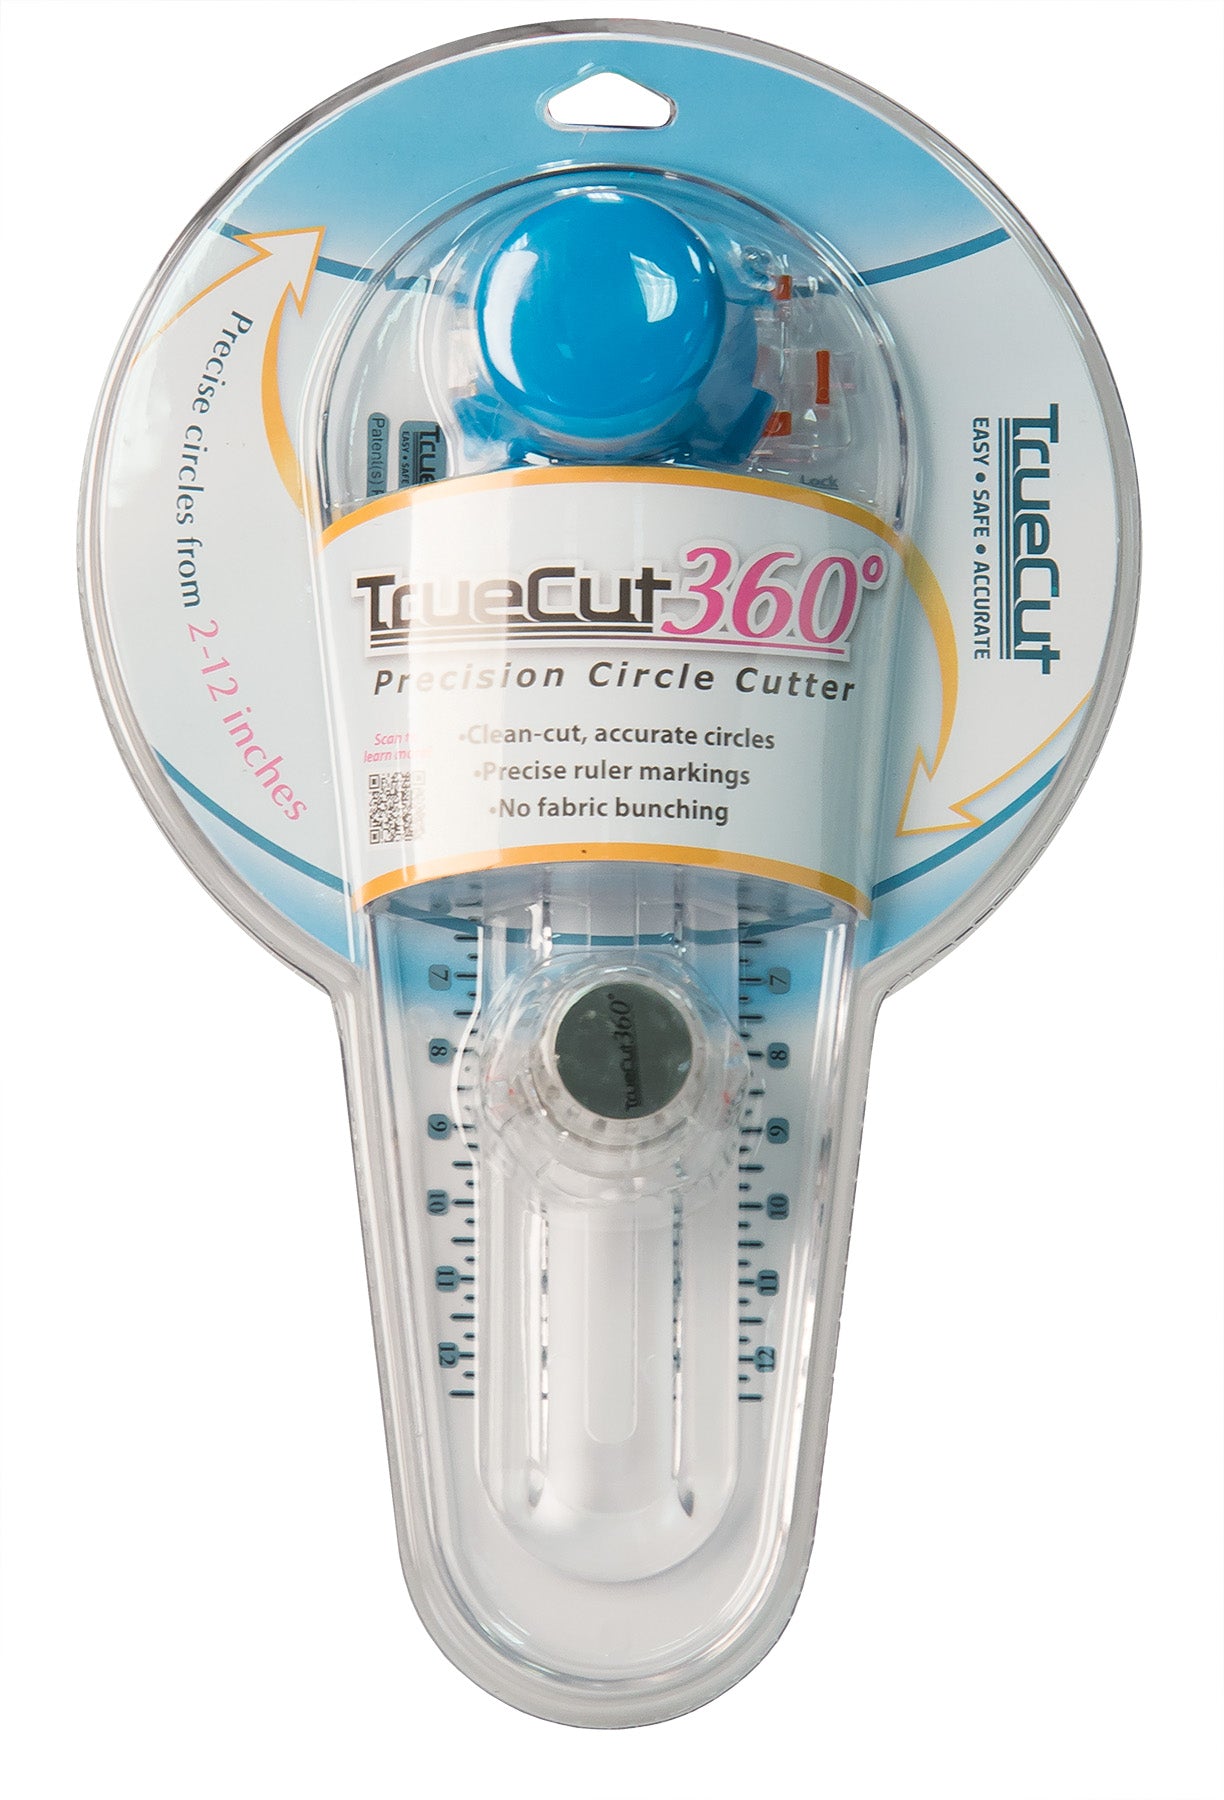 Grace TrueCut 360 Precision Circle Cutter